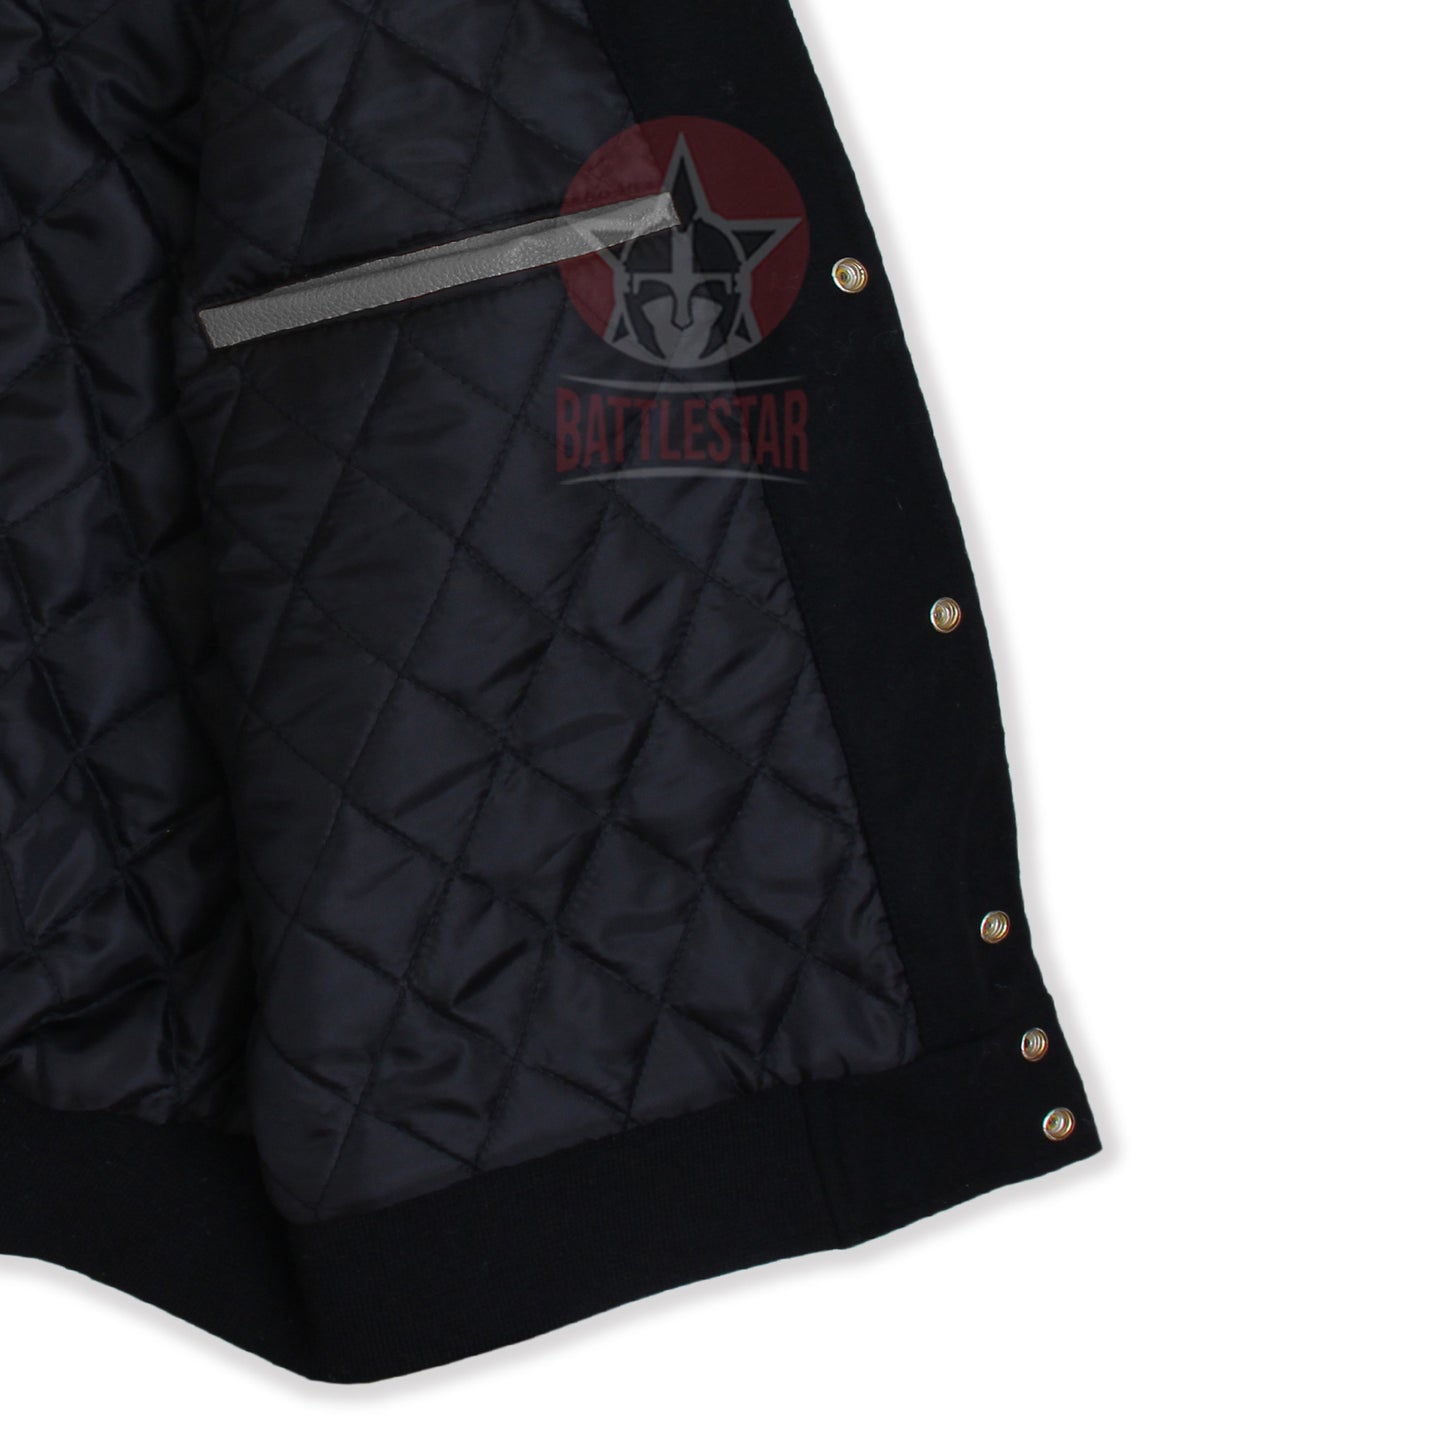 Black Wool Gray Leather Sleeves Hooded Varsity Jacket